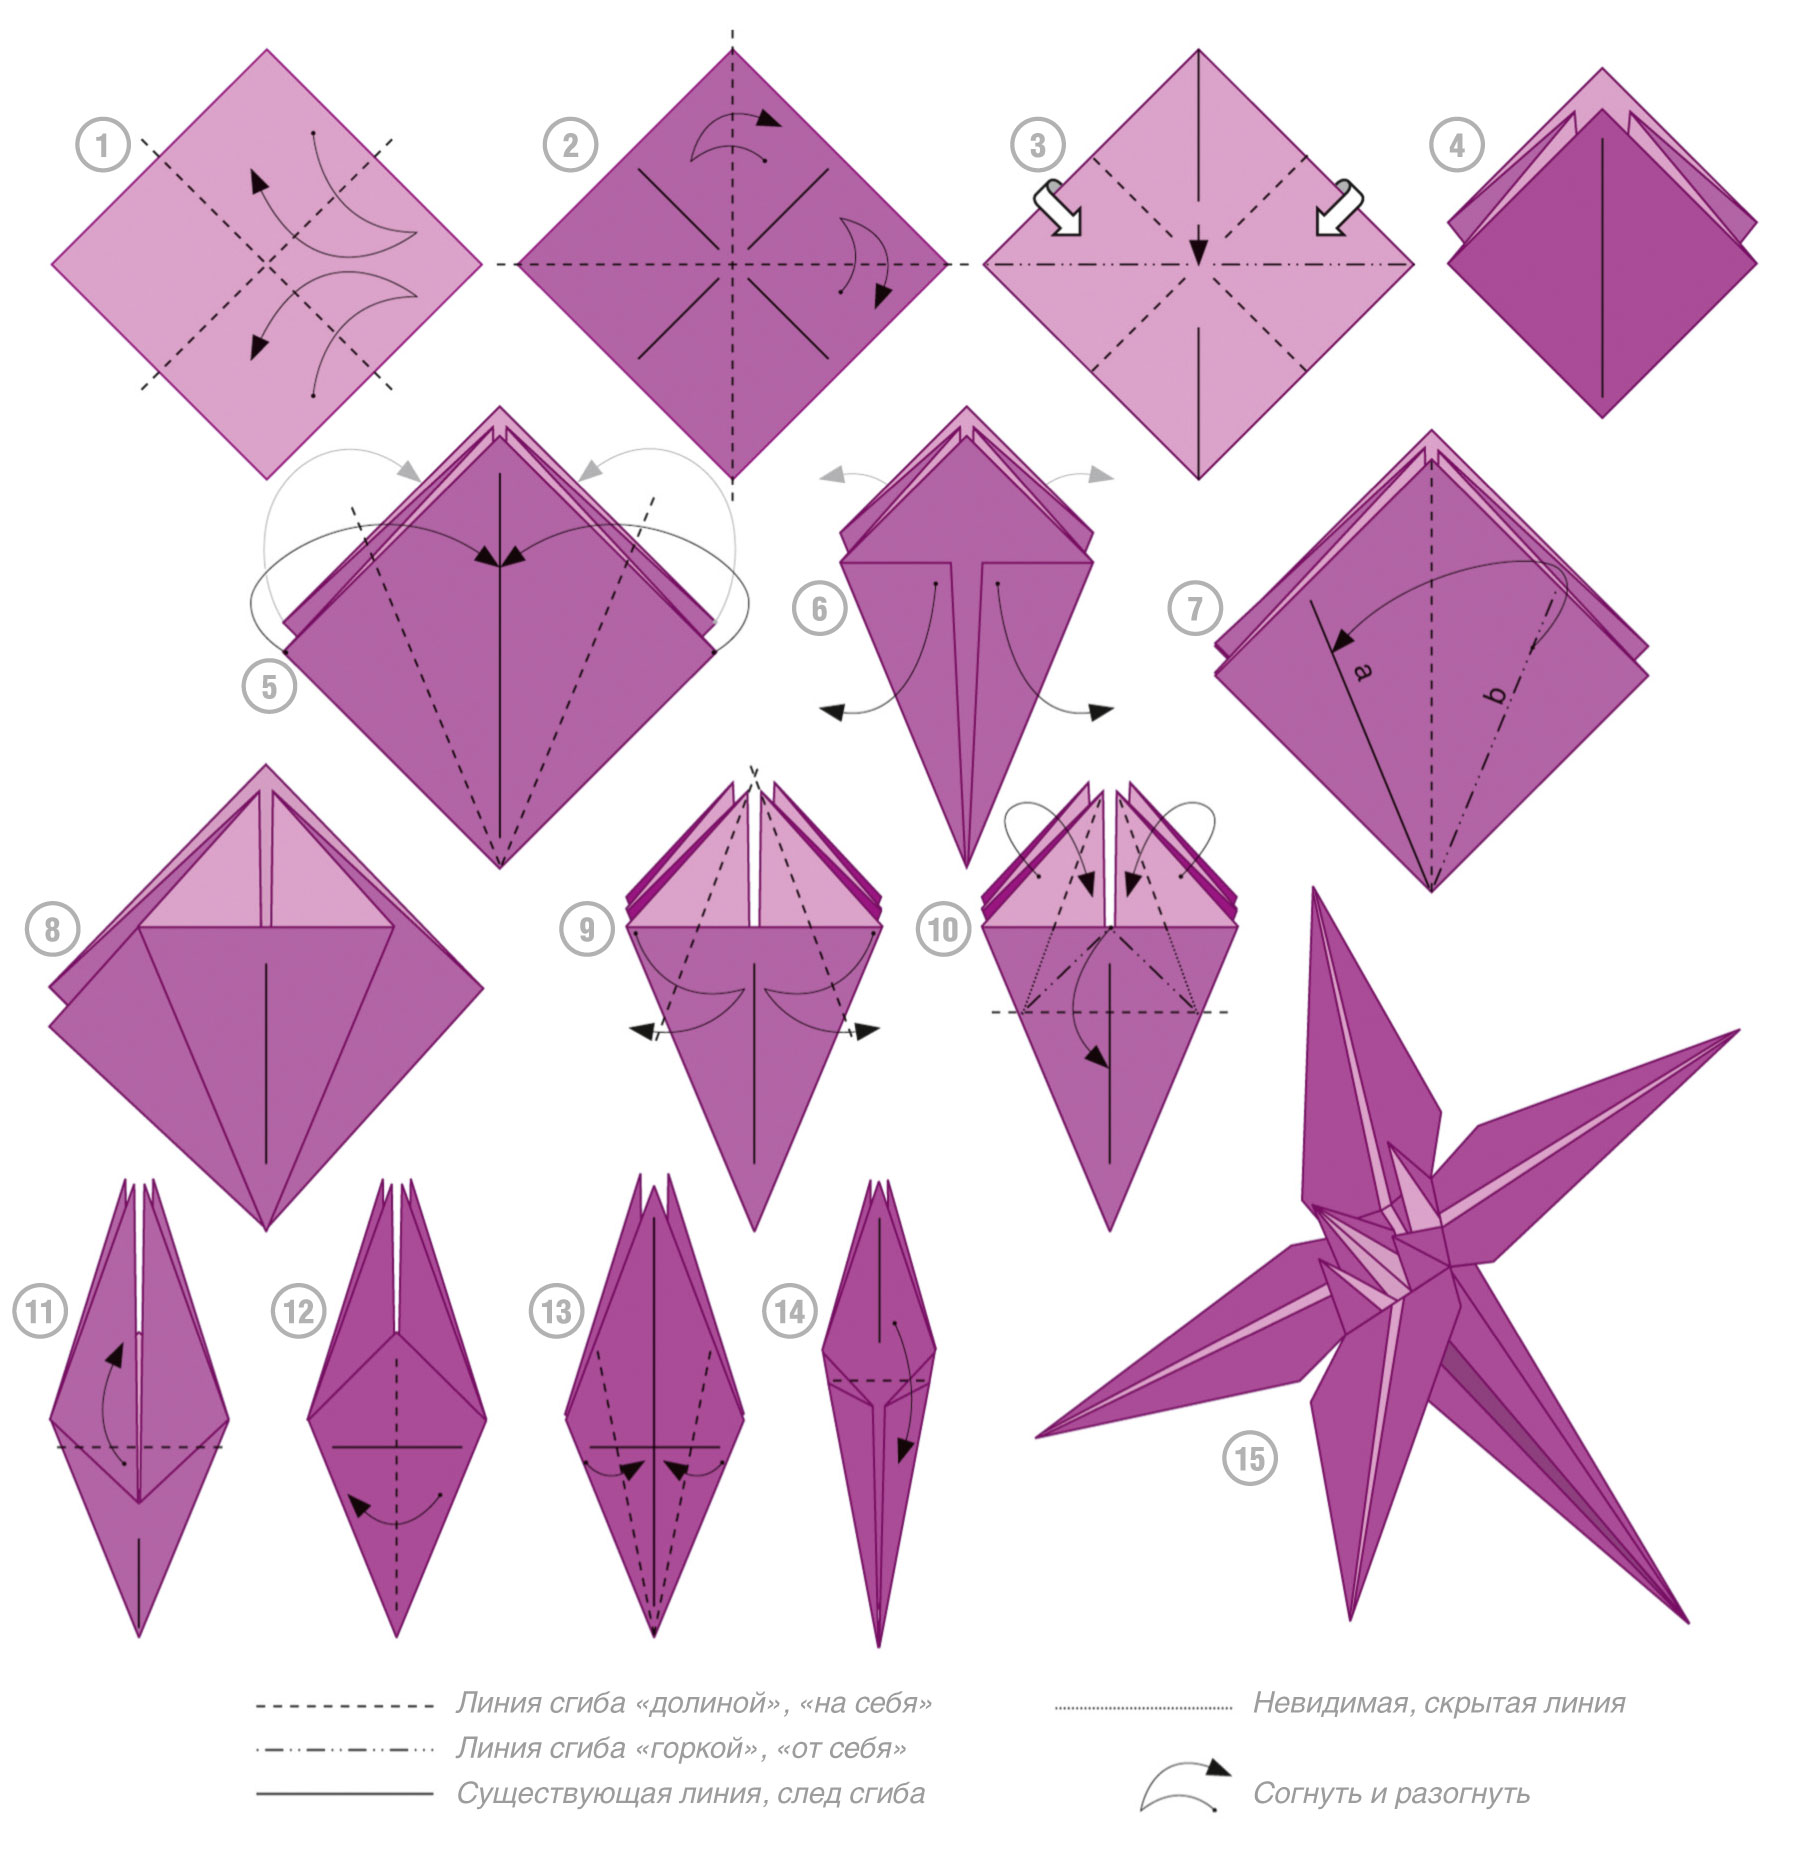 Оригами Цветов Из Бумаги Для Детей